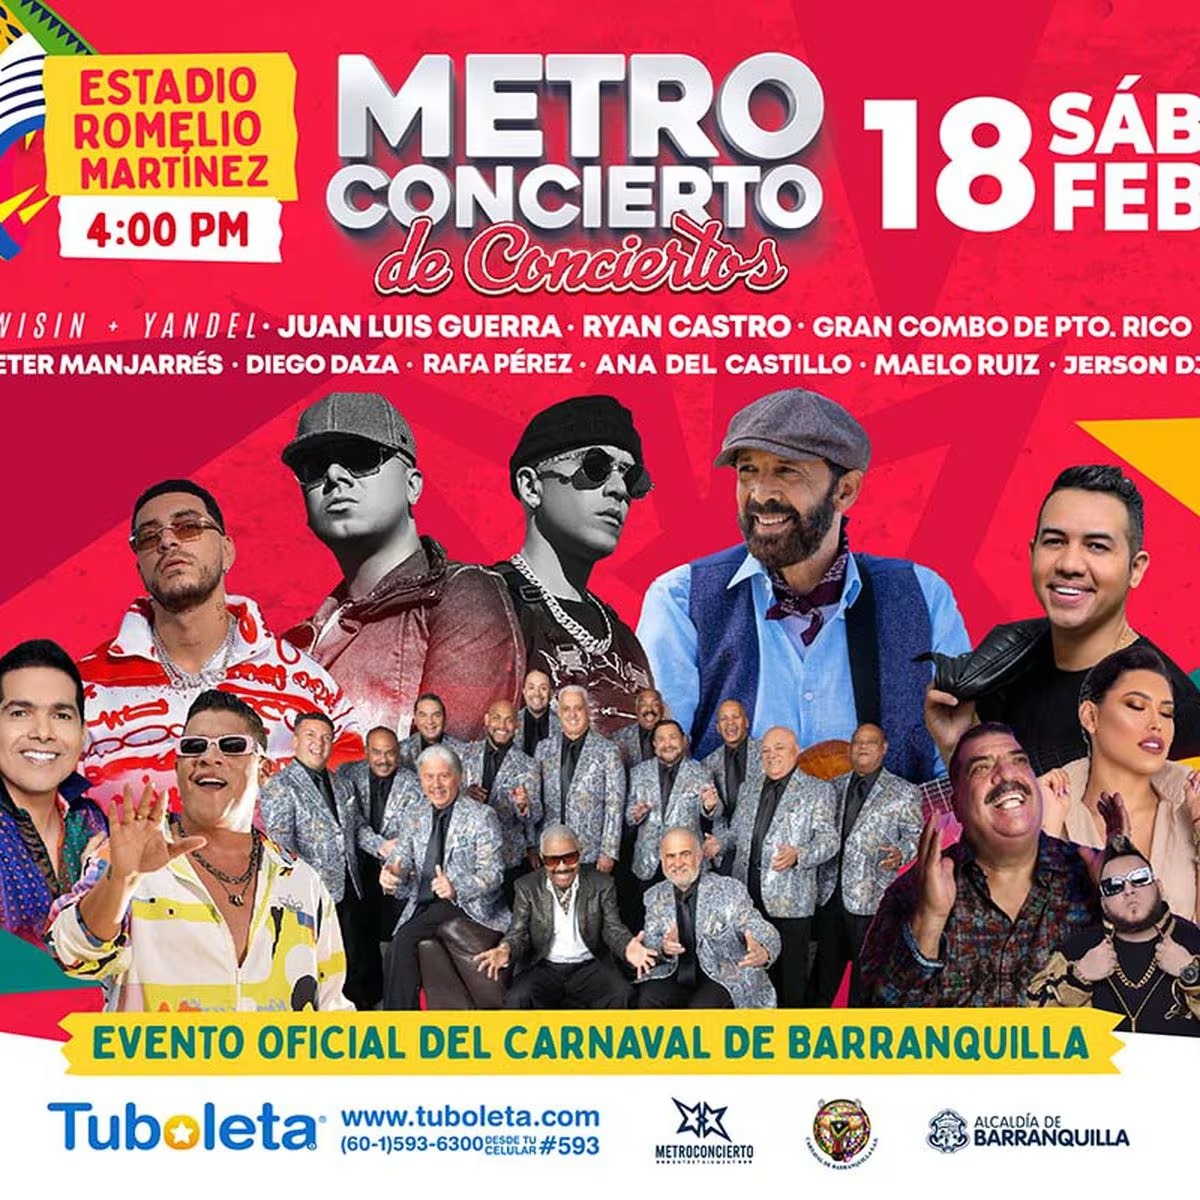 Imagen promocional para el Metroconcierto de Carnaval 2023.